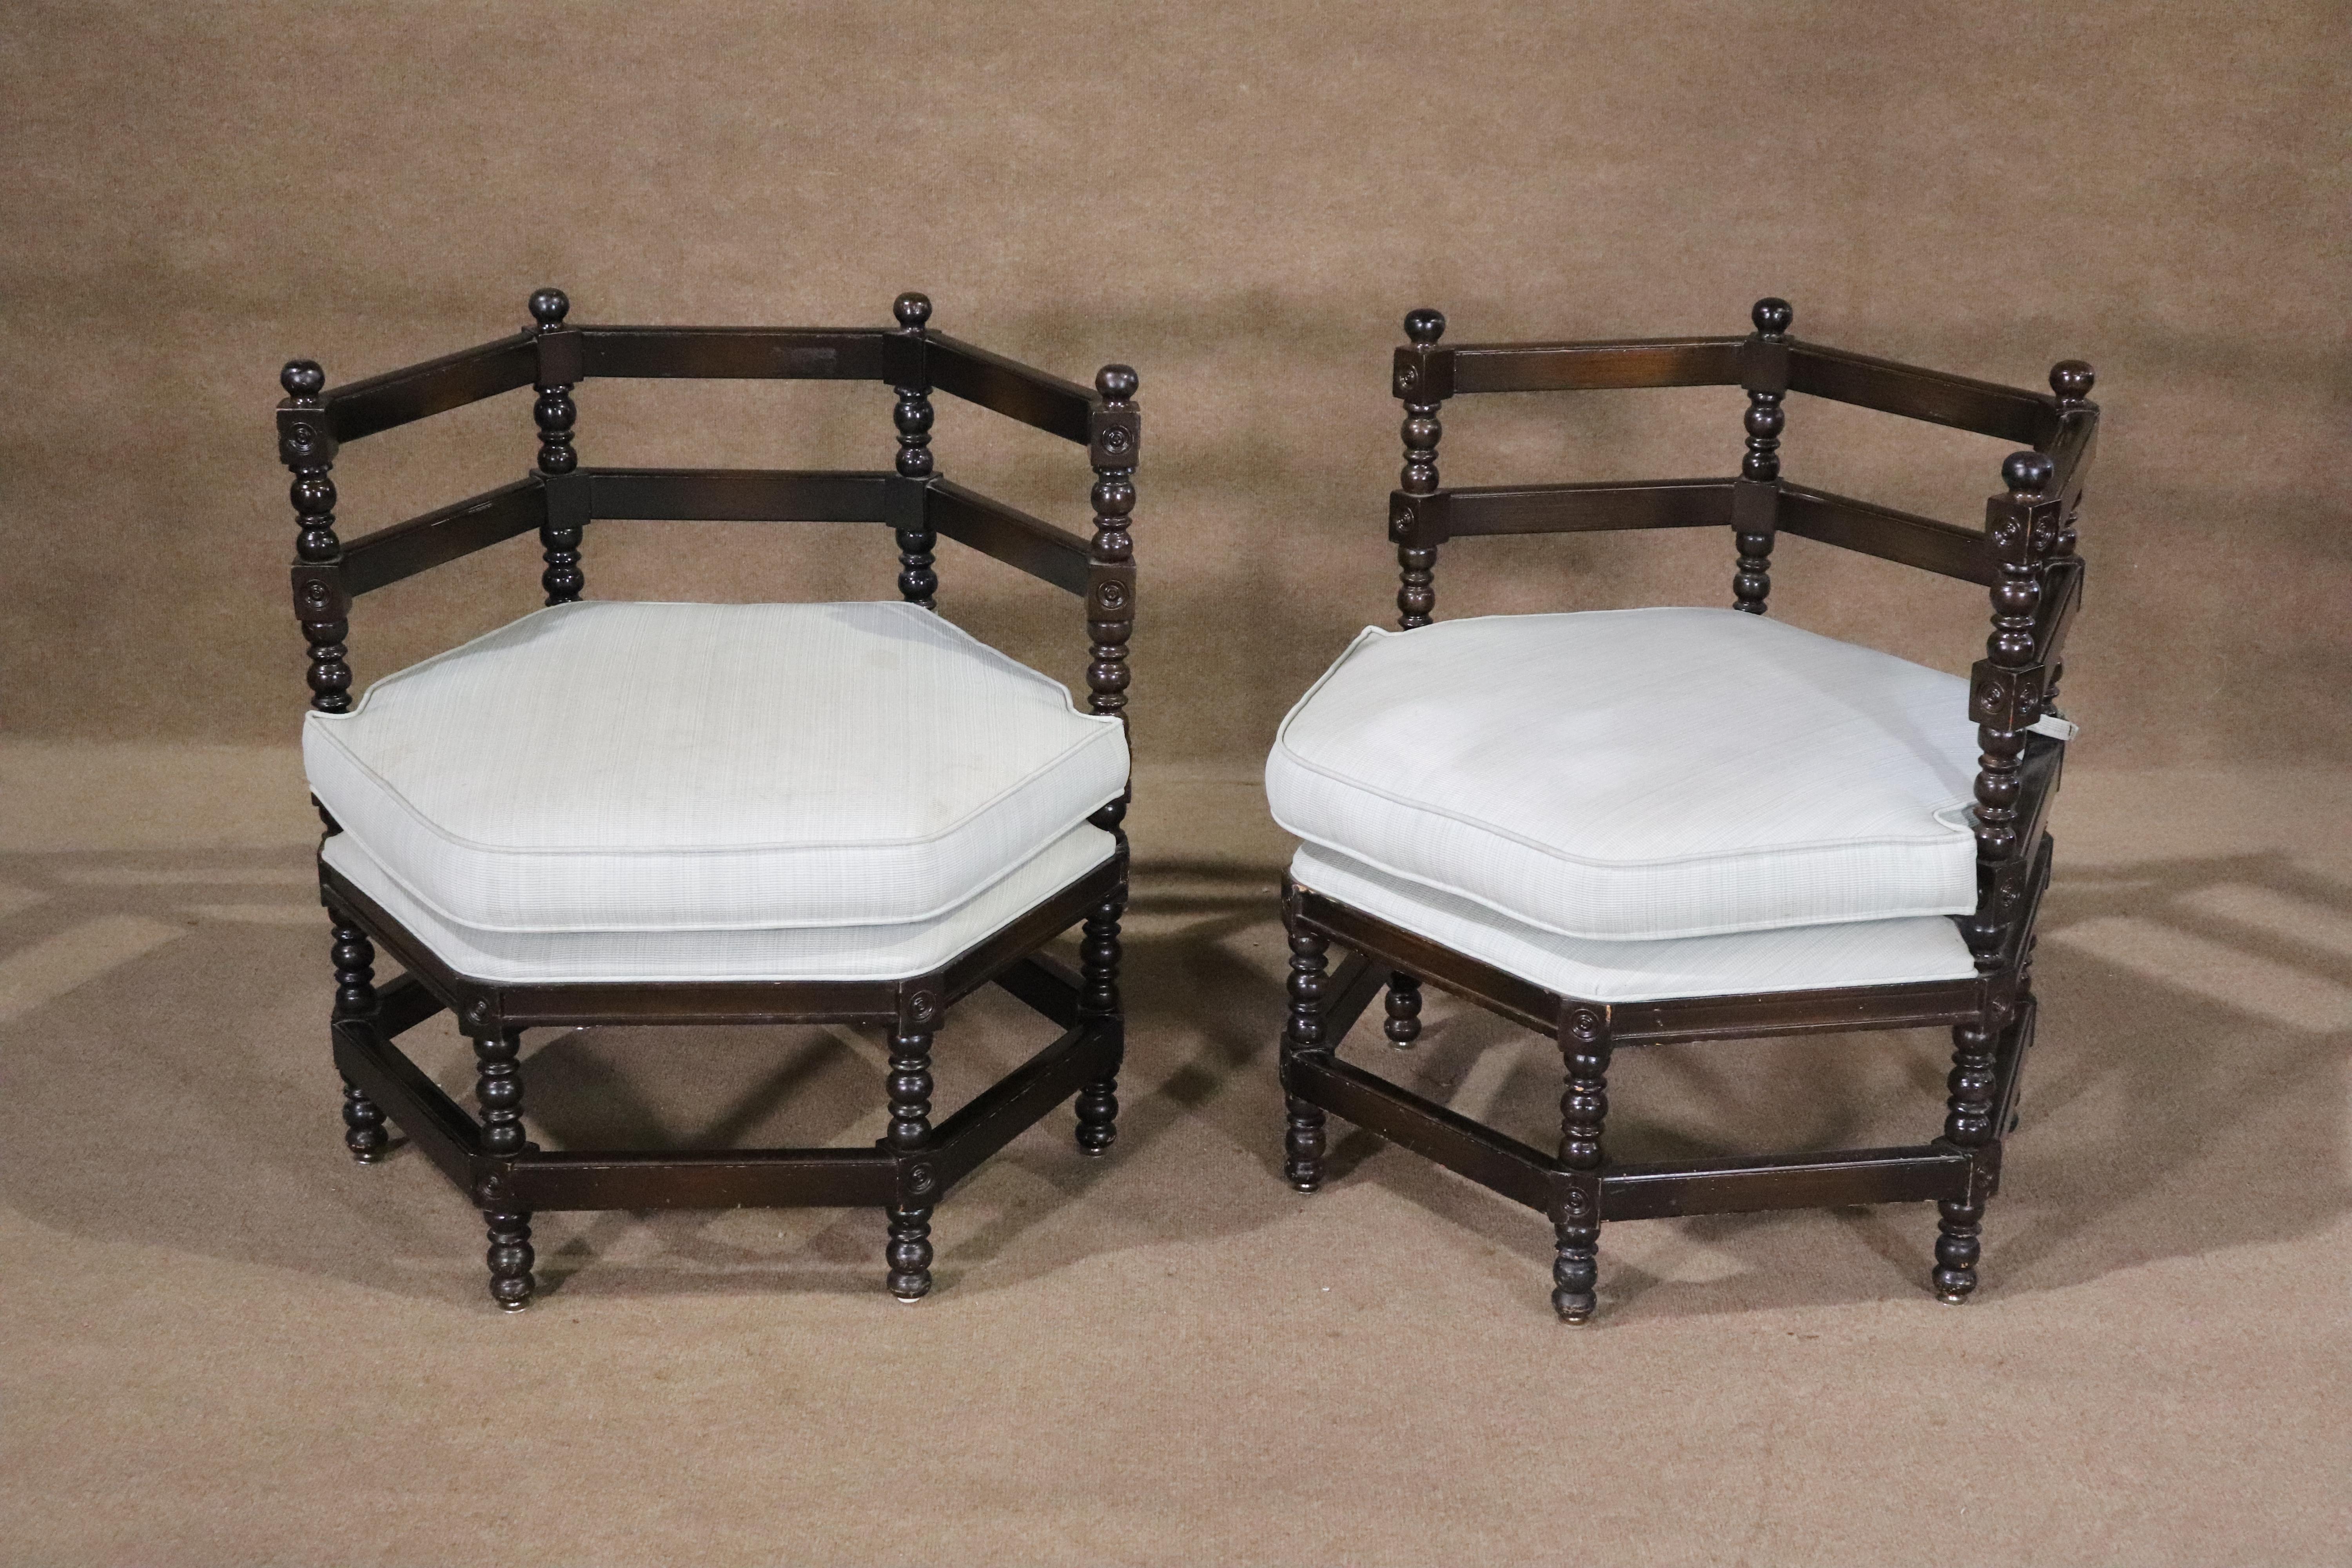 Paire unique de chaises hexagonales tournées vintage avec des cadres en bois sculpté.
Veuillez confirmer le lieu NY ou NJ 